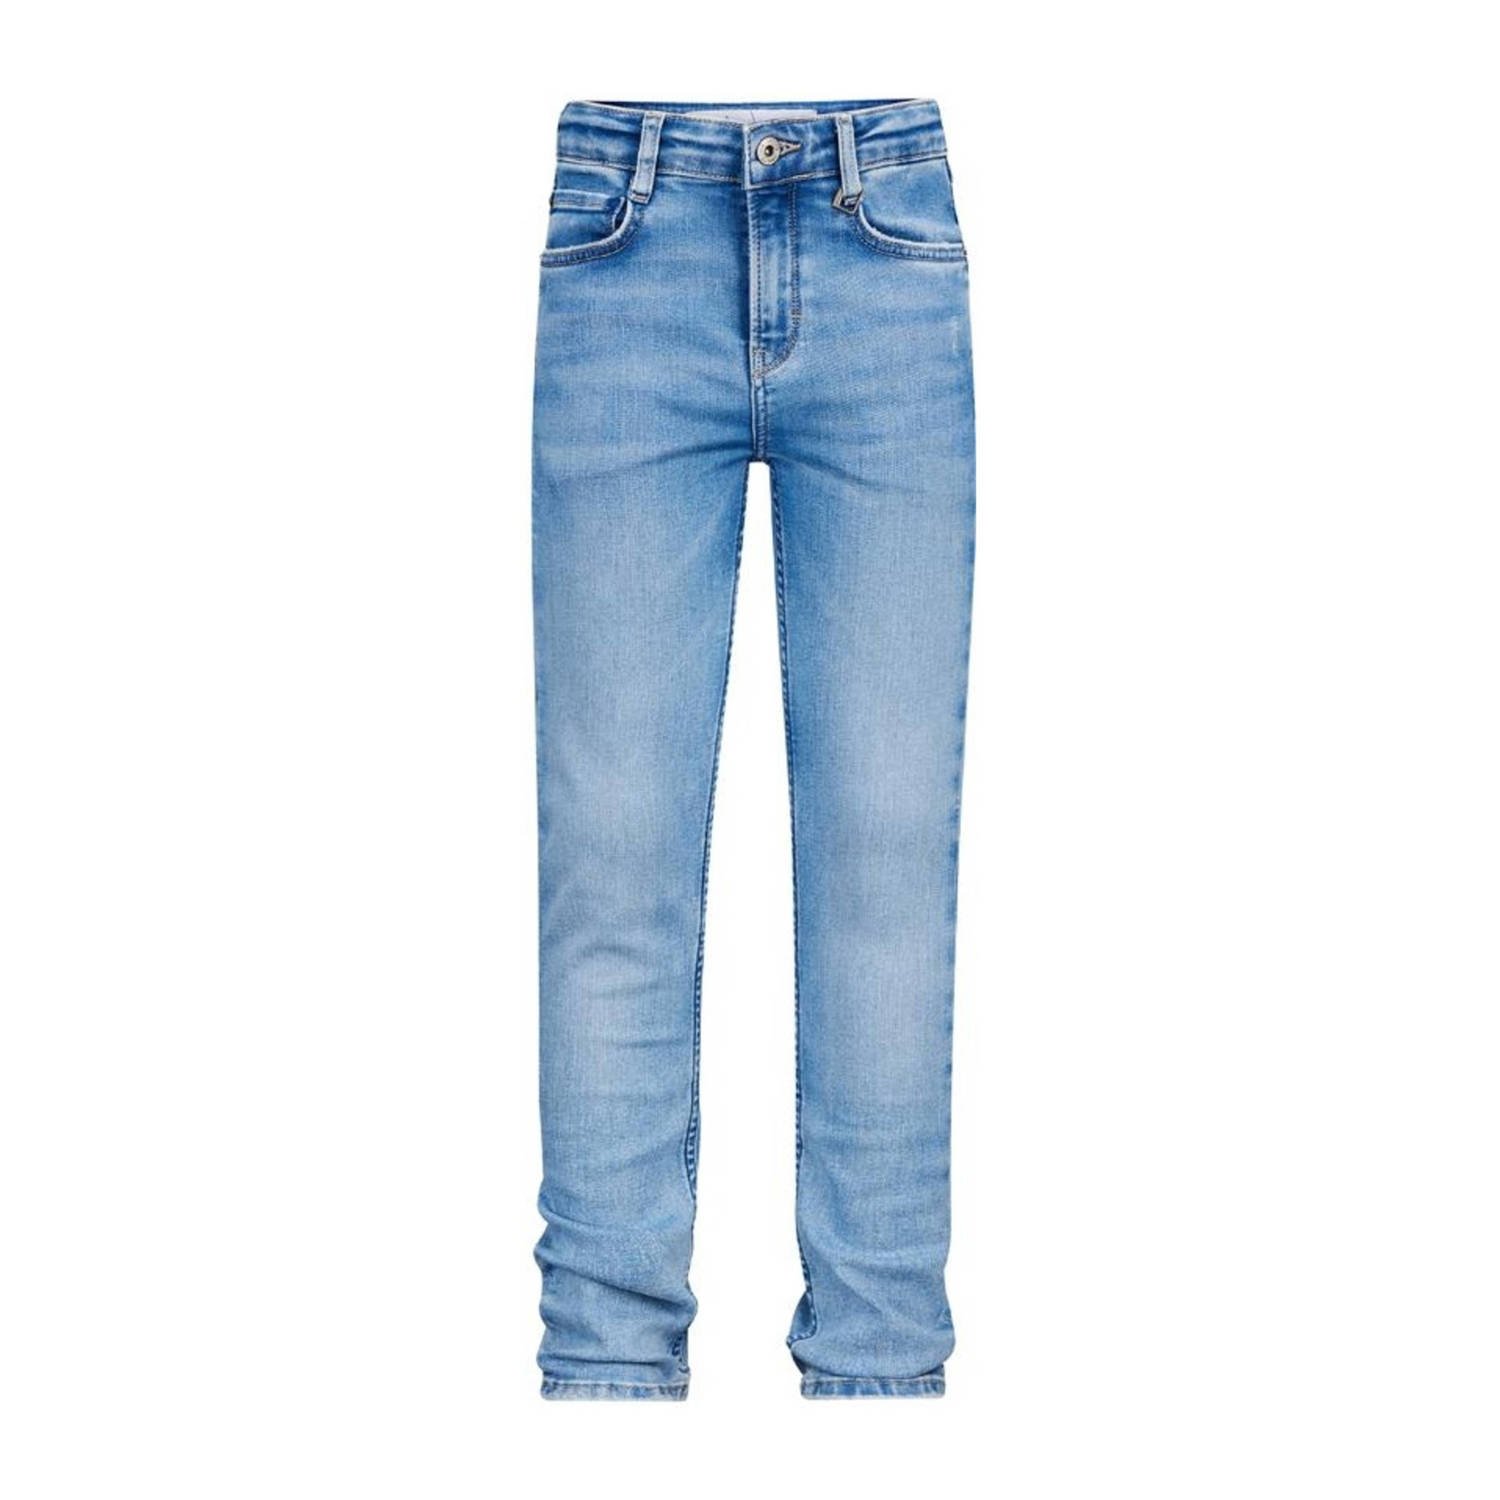 Retour Jeans straight fit jeans James Vintage light blue denim